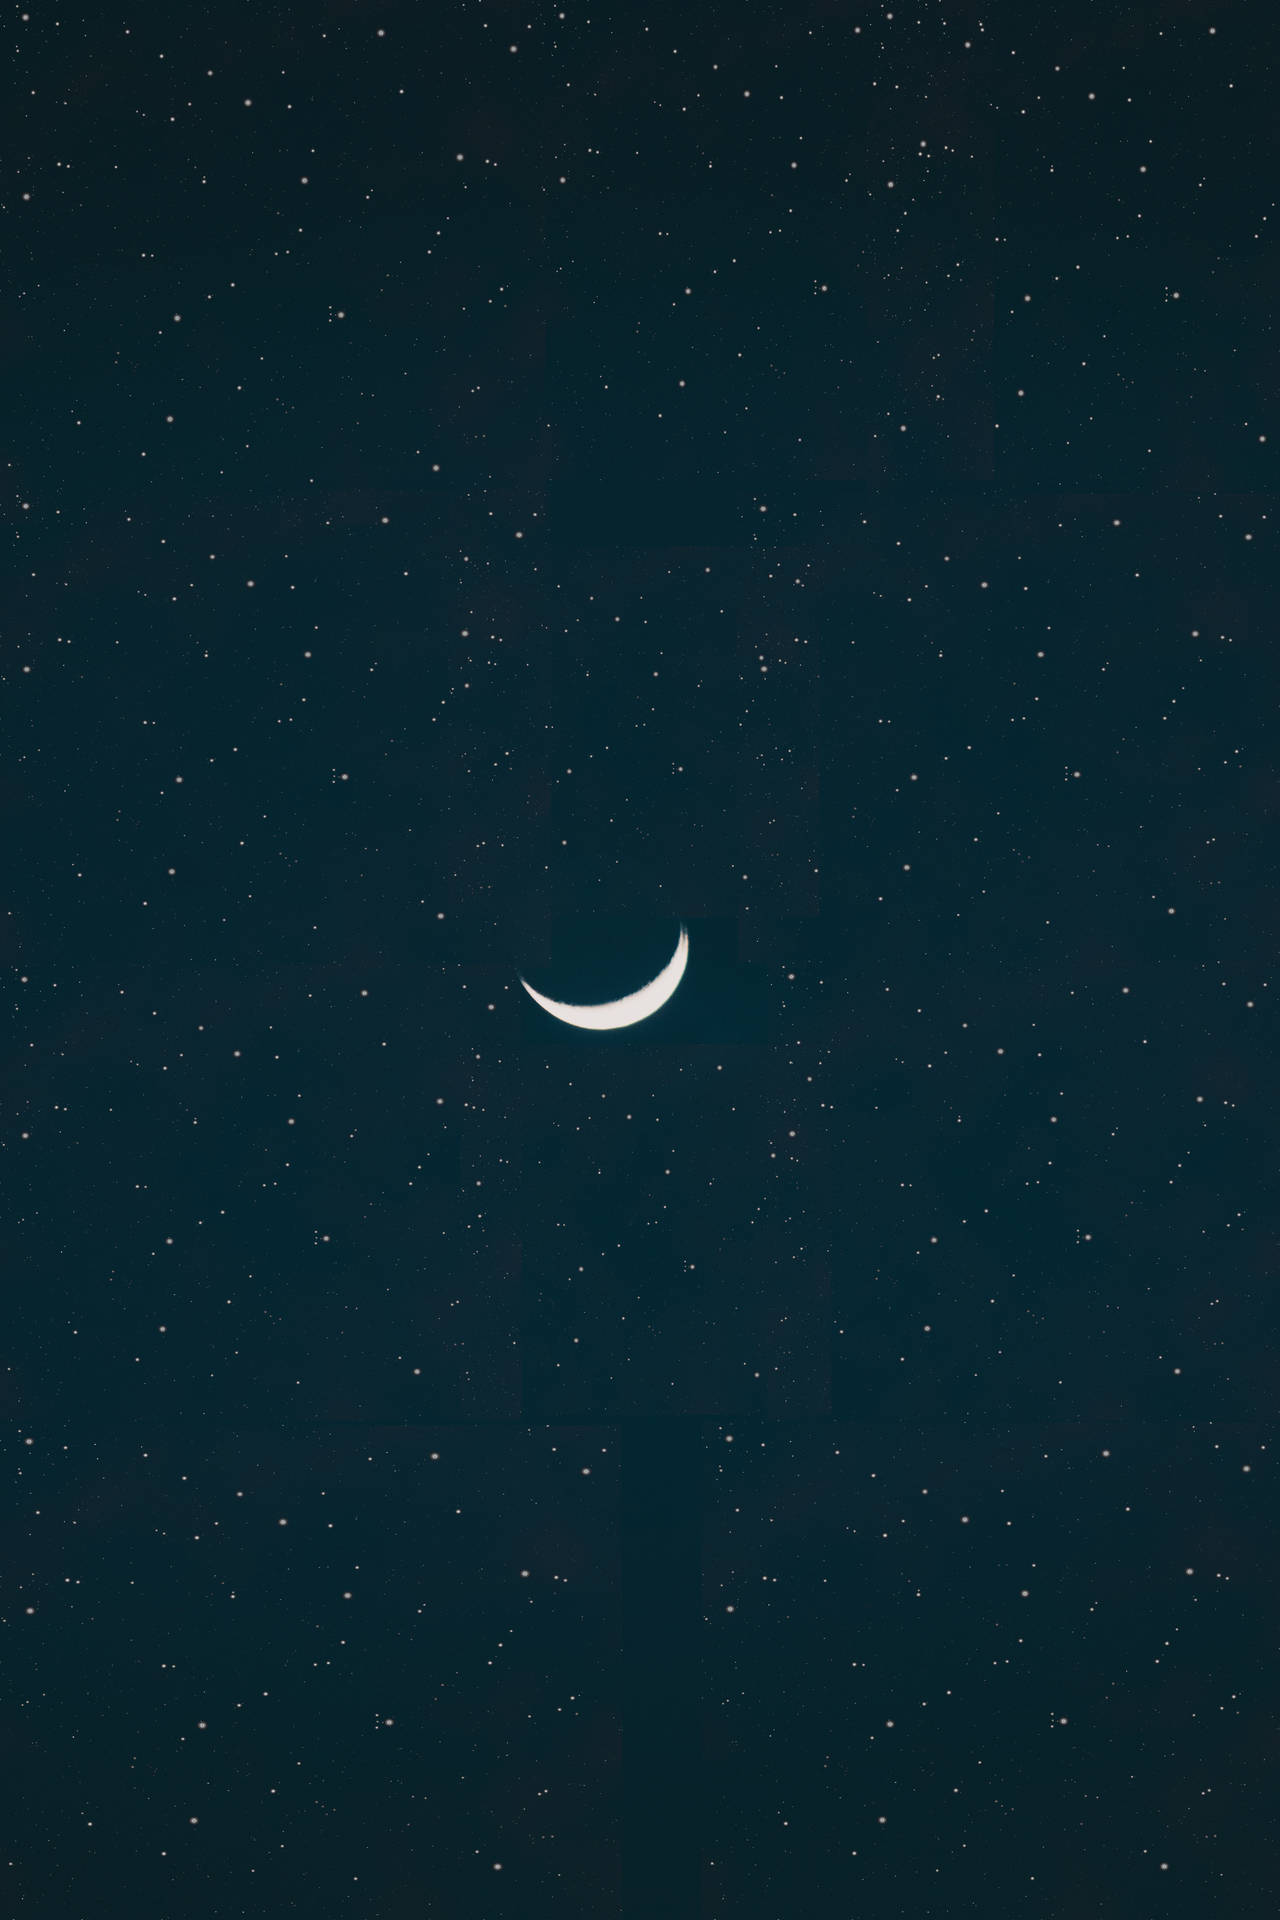 Crescent-shaped Hd Moon Wallpaper